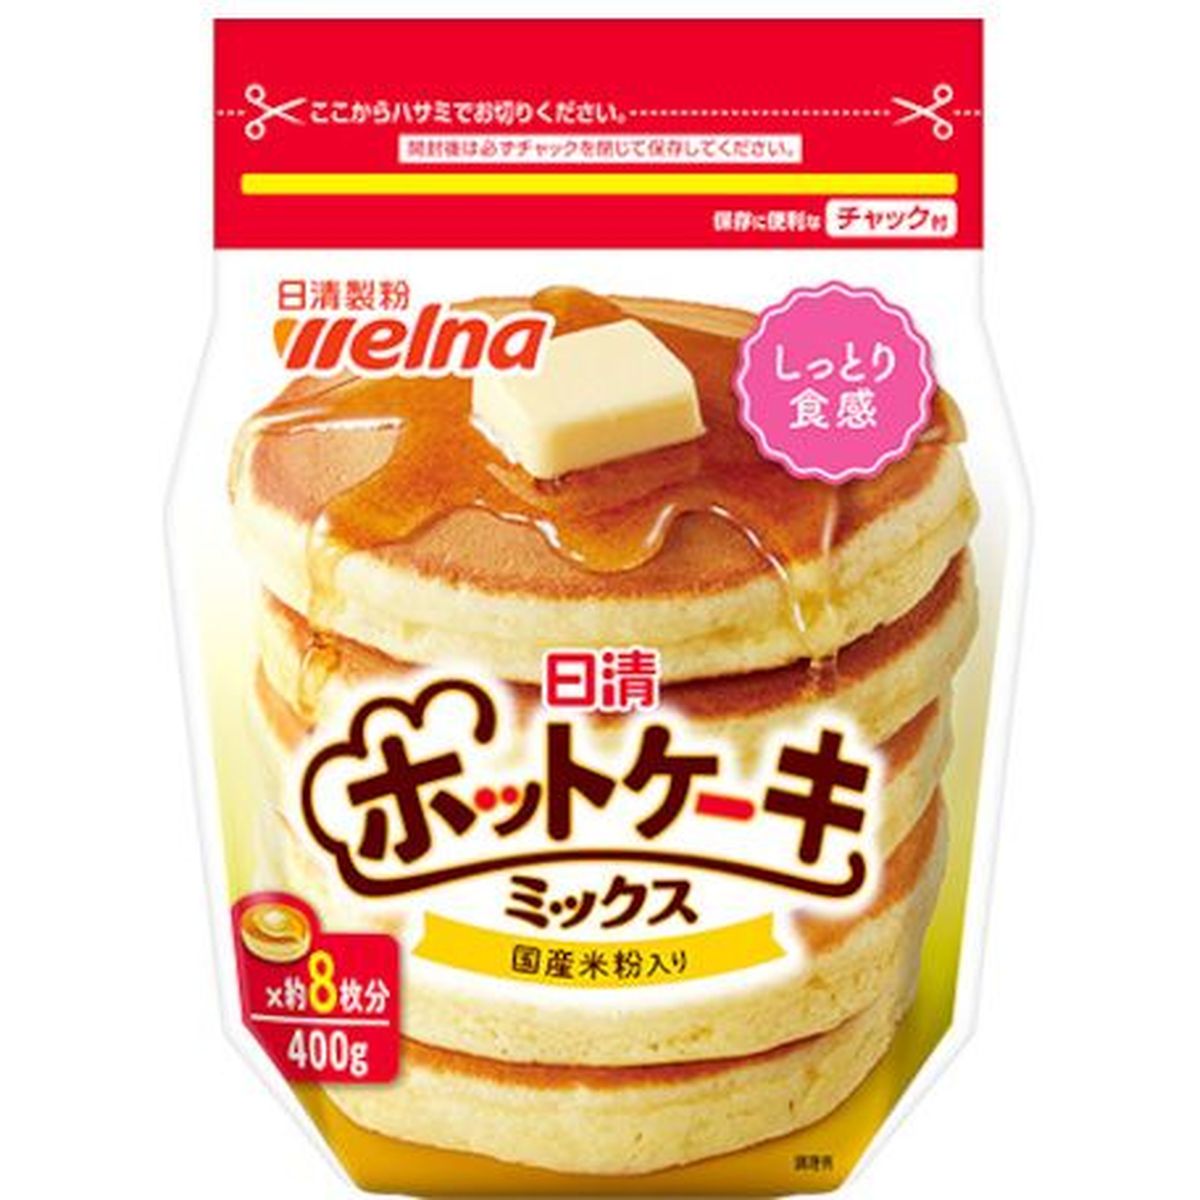 【12個入リ】日清製粉ウェルナ ホットケーキミックスチャック付 400g